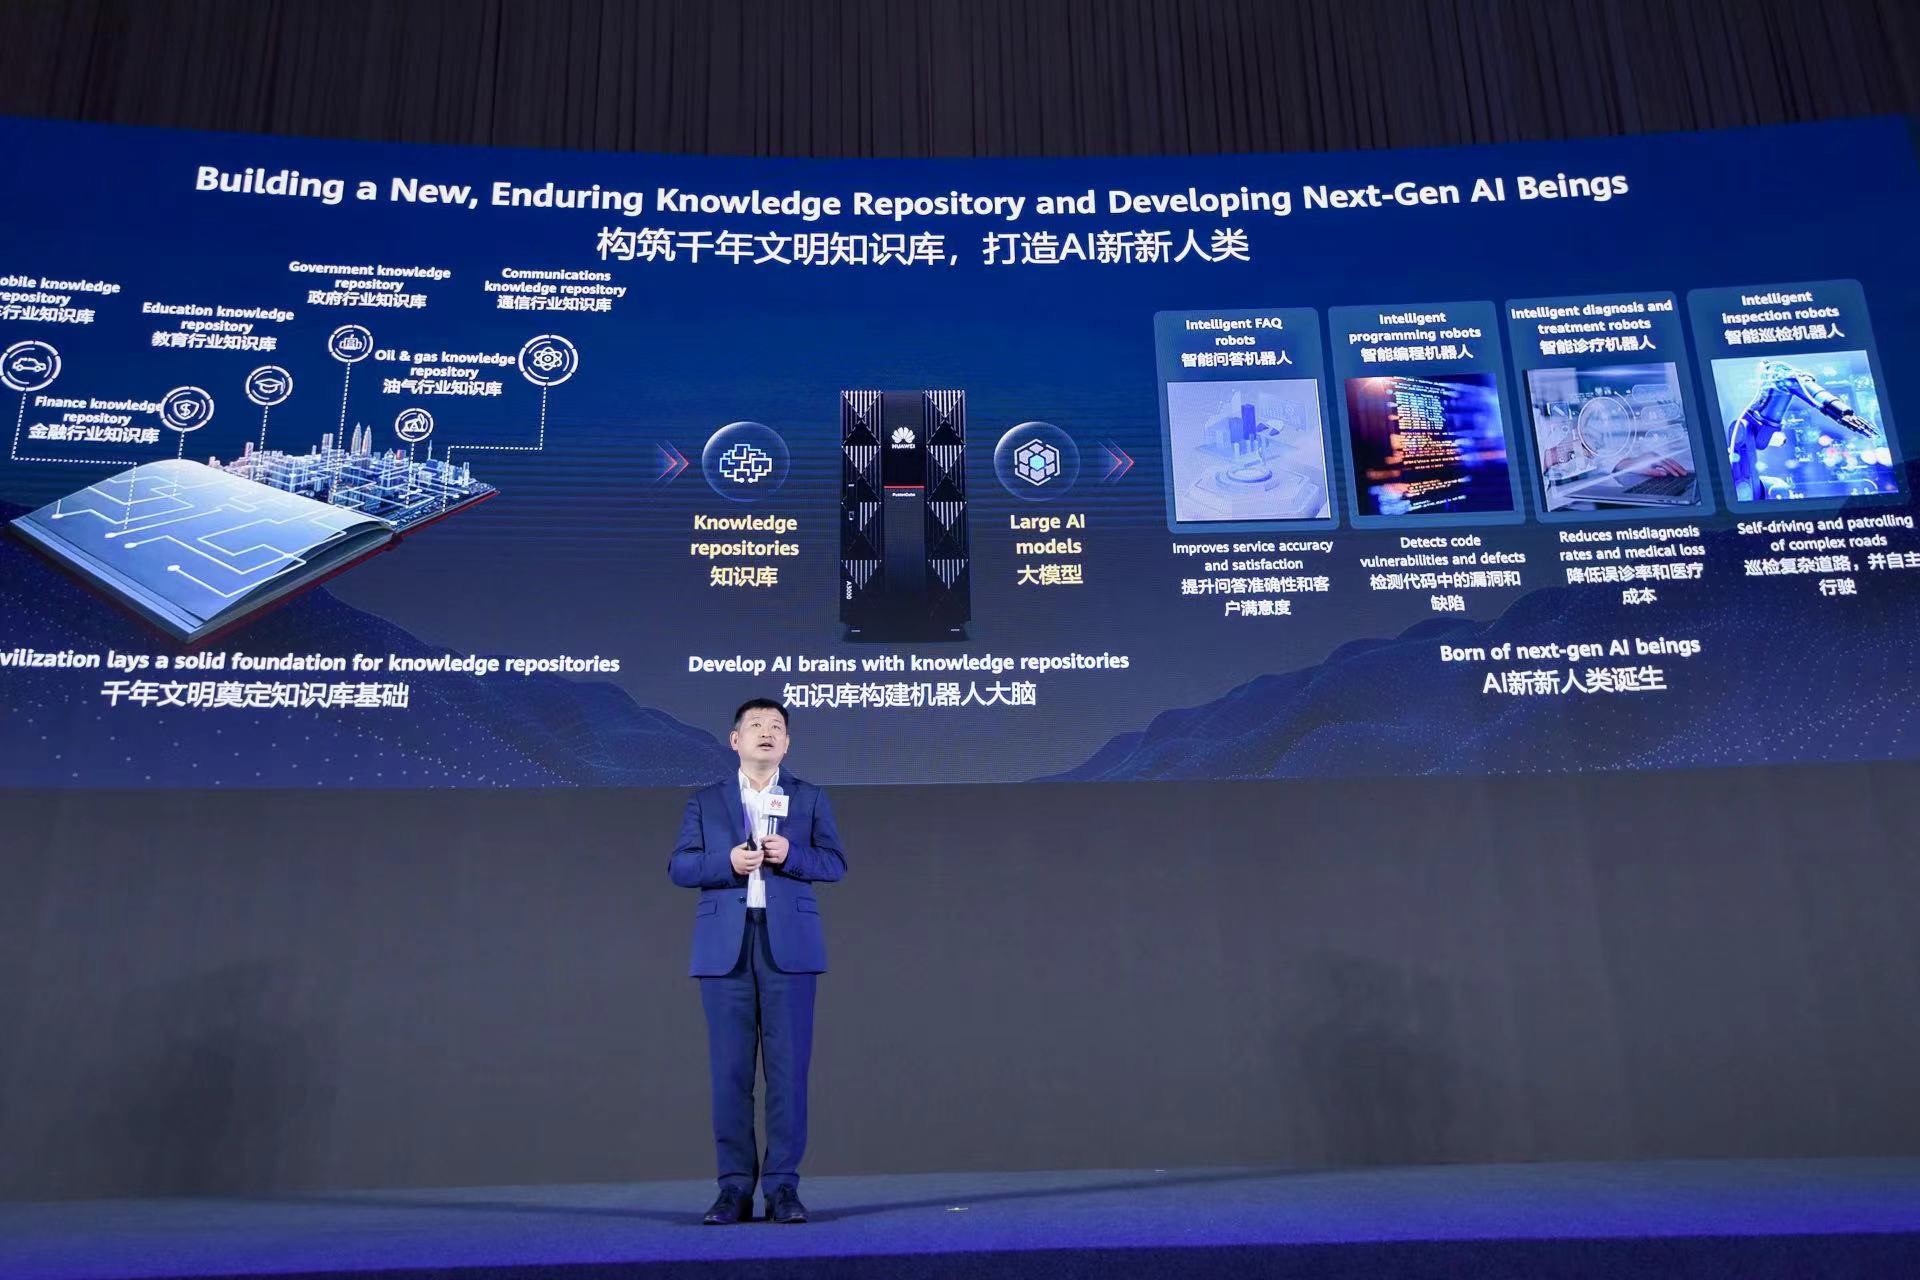 华为公司副总裁、数据存储产品线总裁周跃峰博士发表演讲